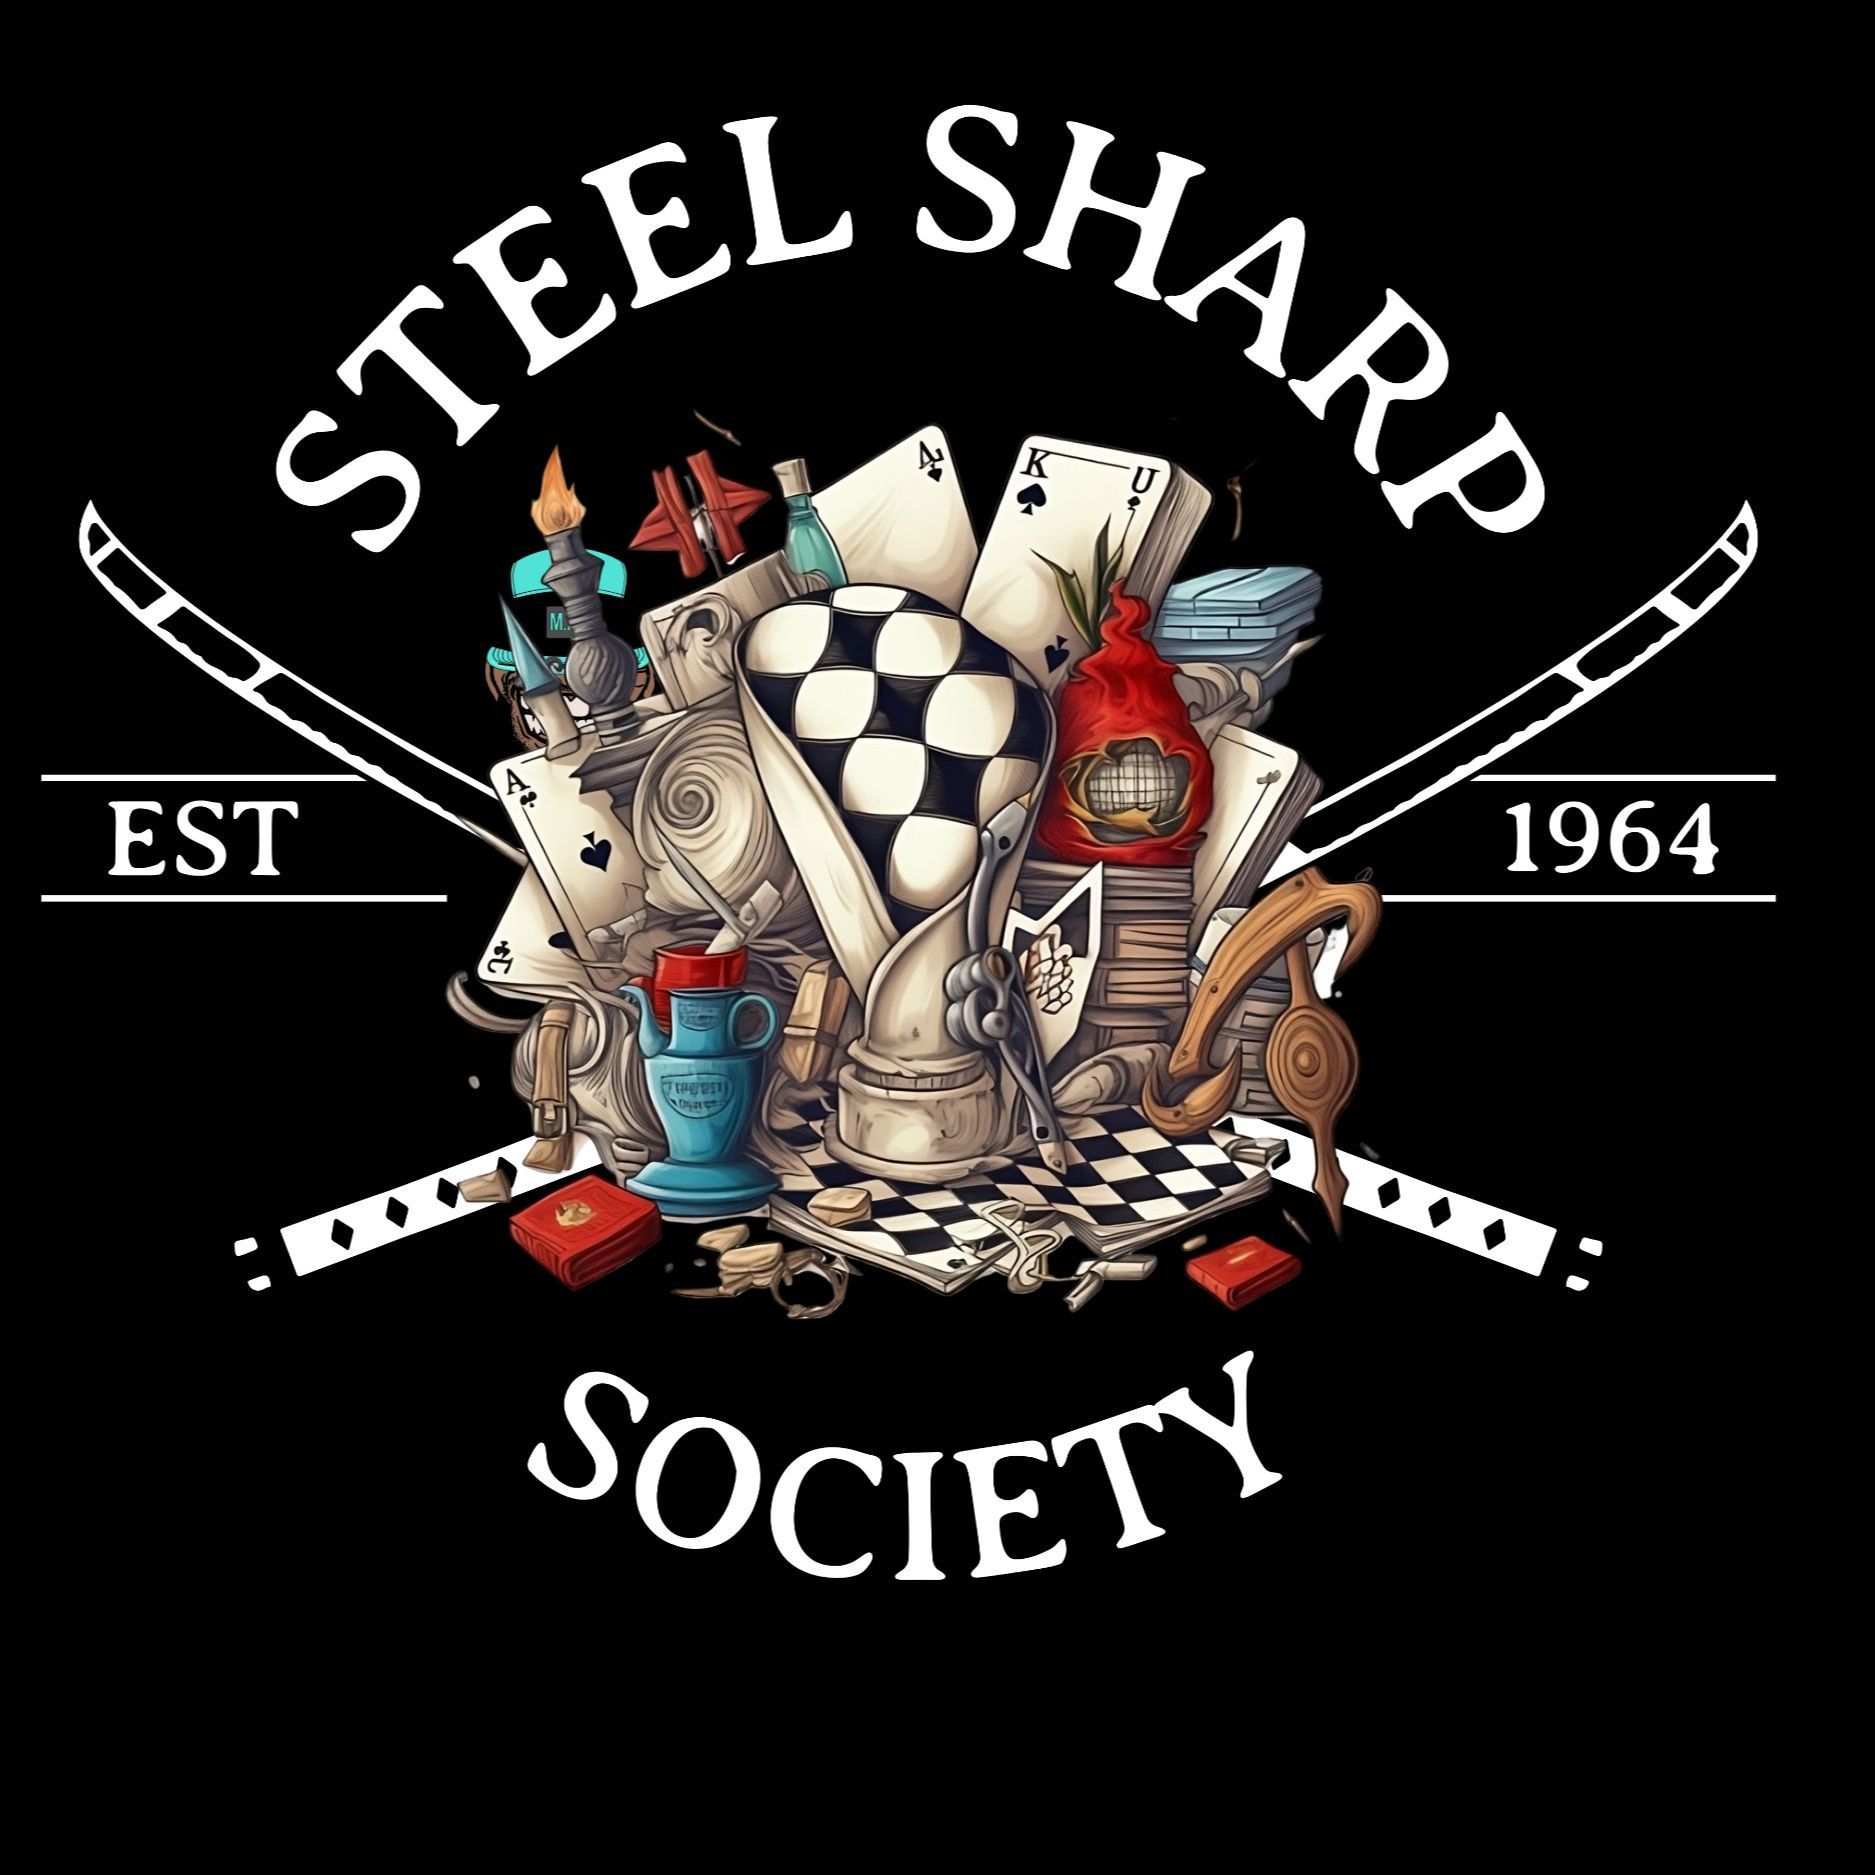 Steel sharp society, 2550 Somersville Rd, 77, Antioch, 94509